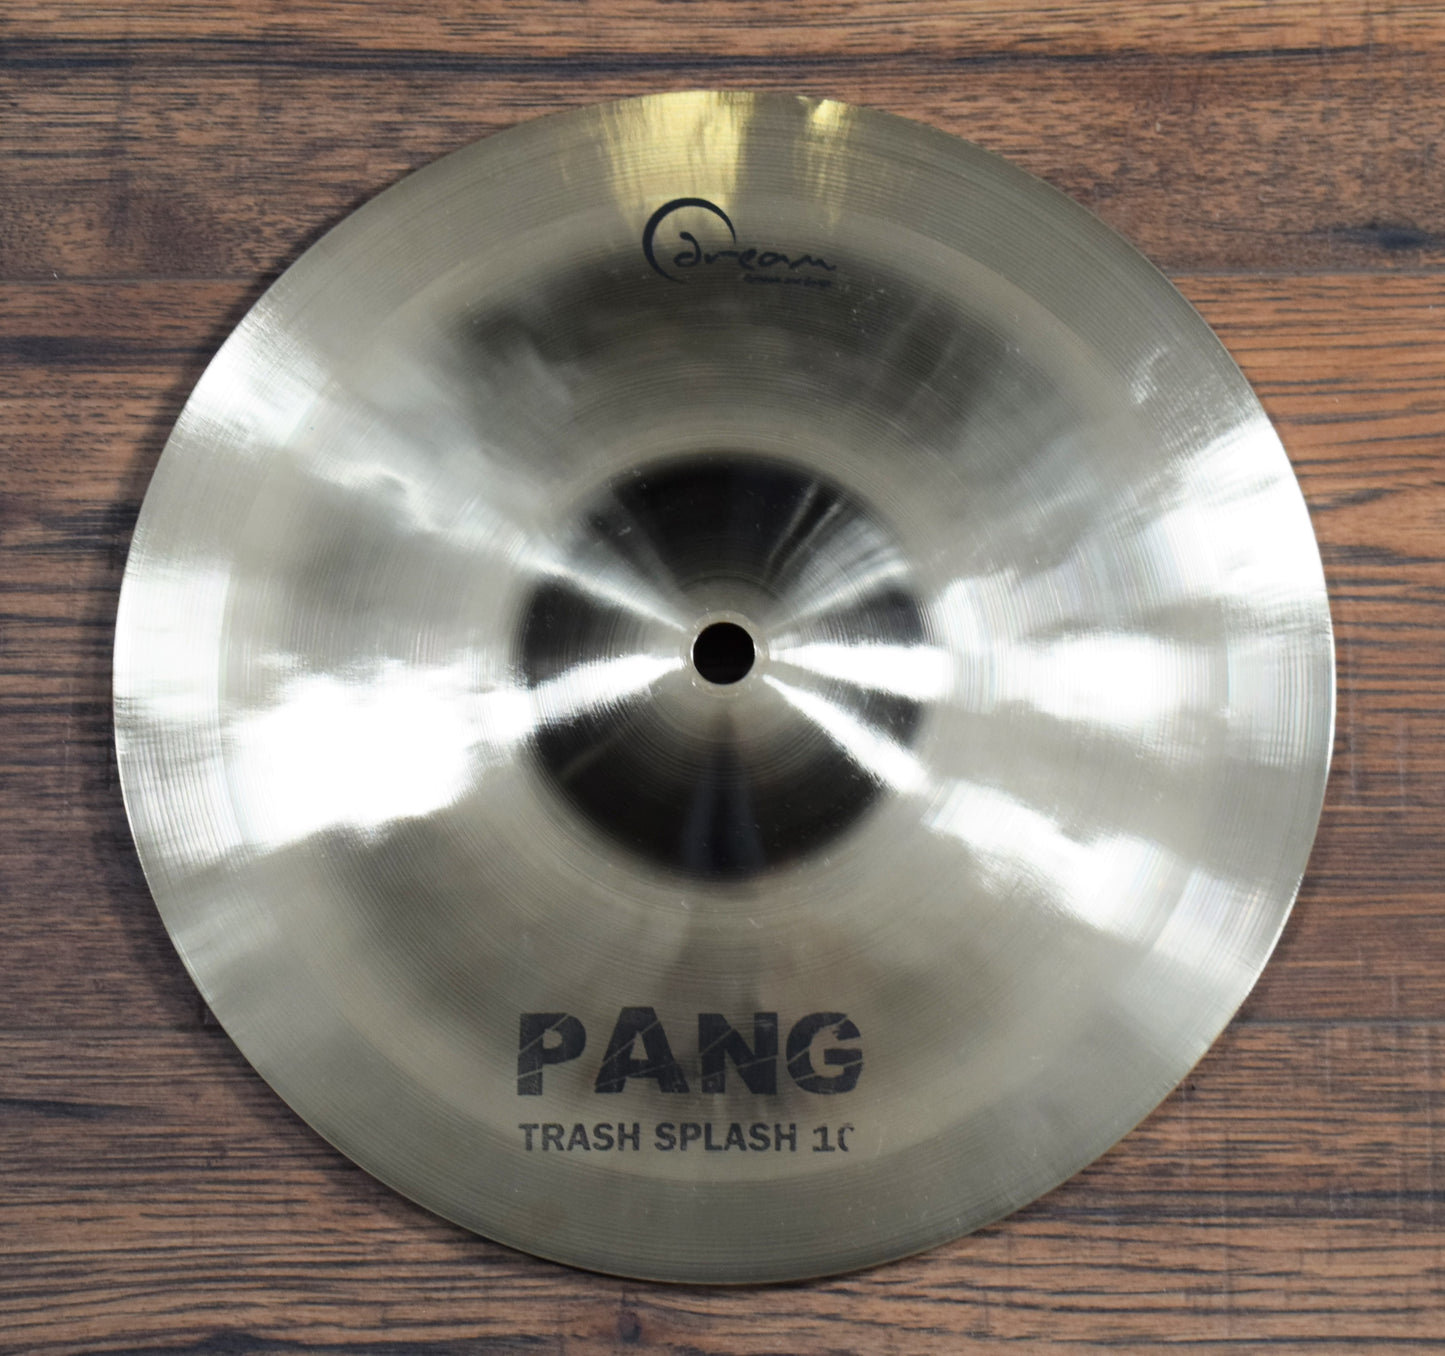 Dream Cymbals PANG10 Hand Forged & Hammered 10" Pang China Splash Cymbal Demo